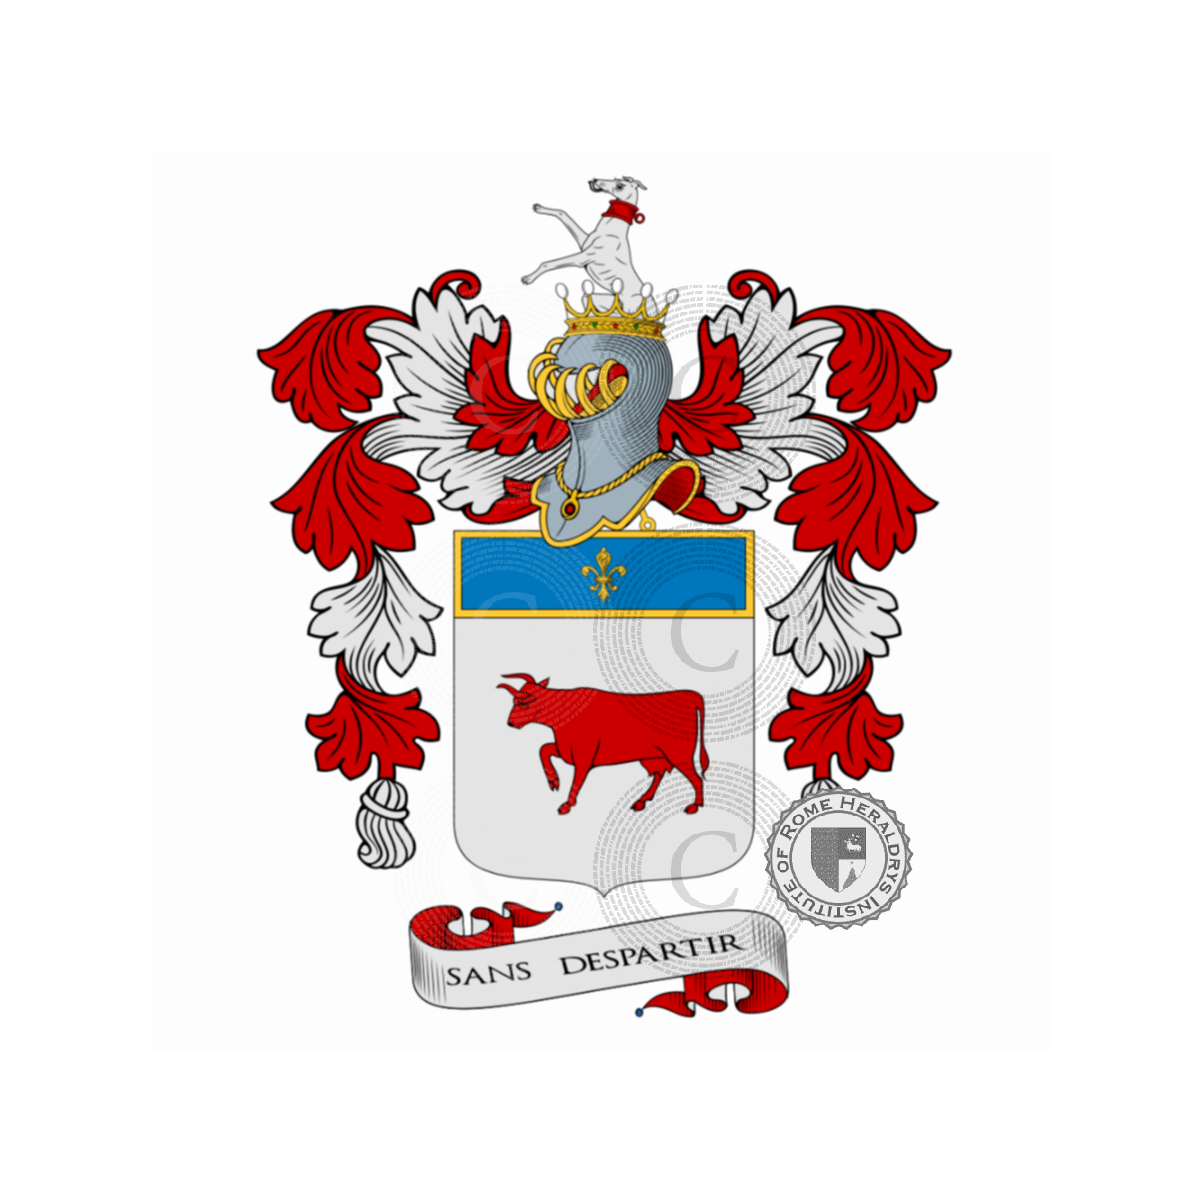 Wappen der FamilieVacca, della Vacca,Vaccara,Vaccari